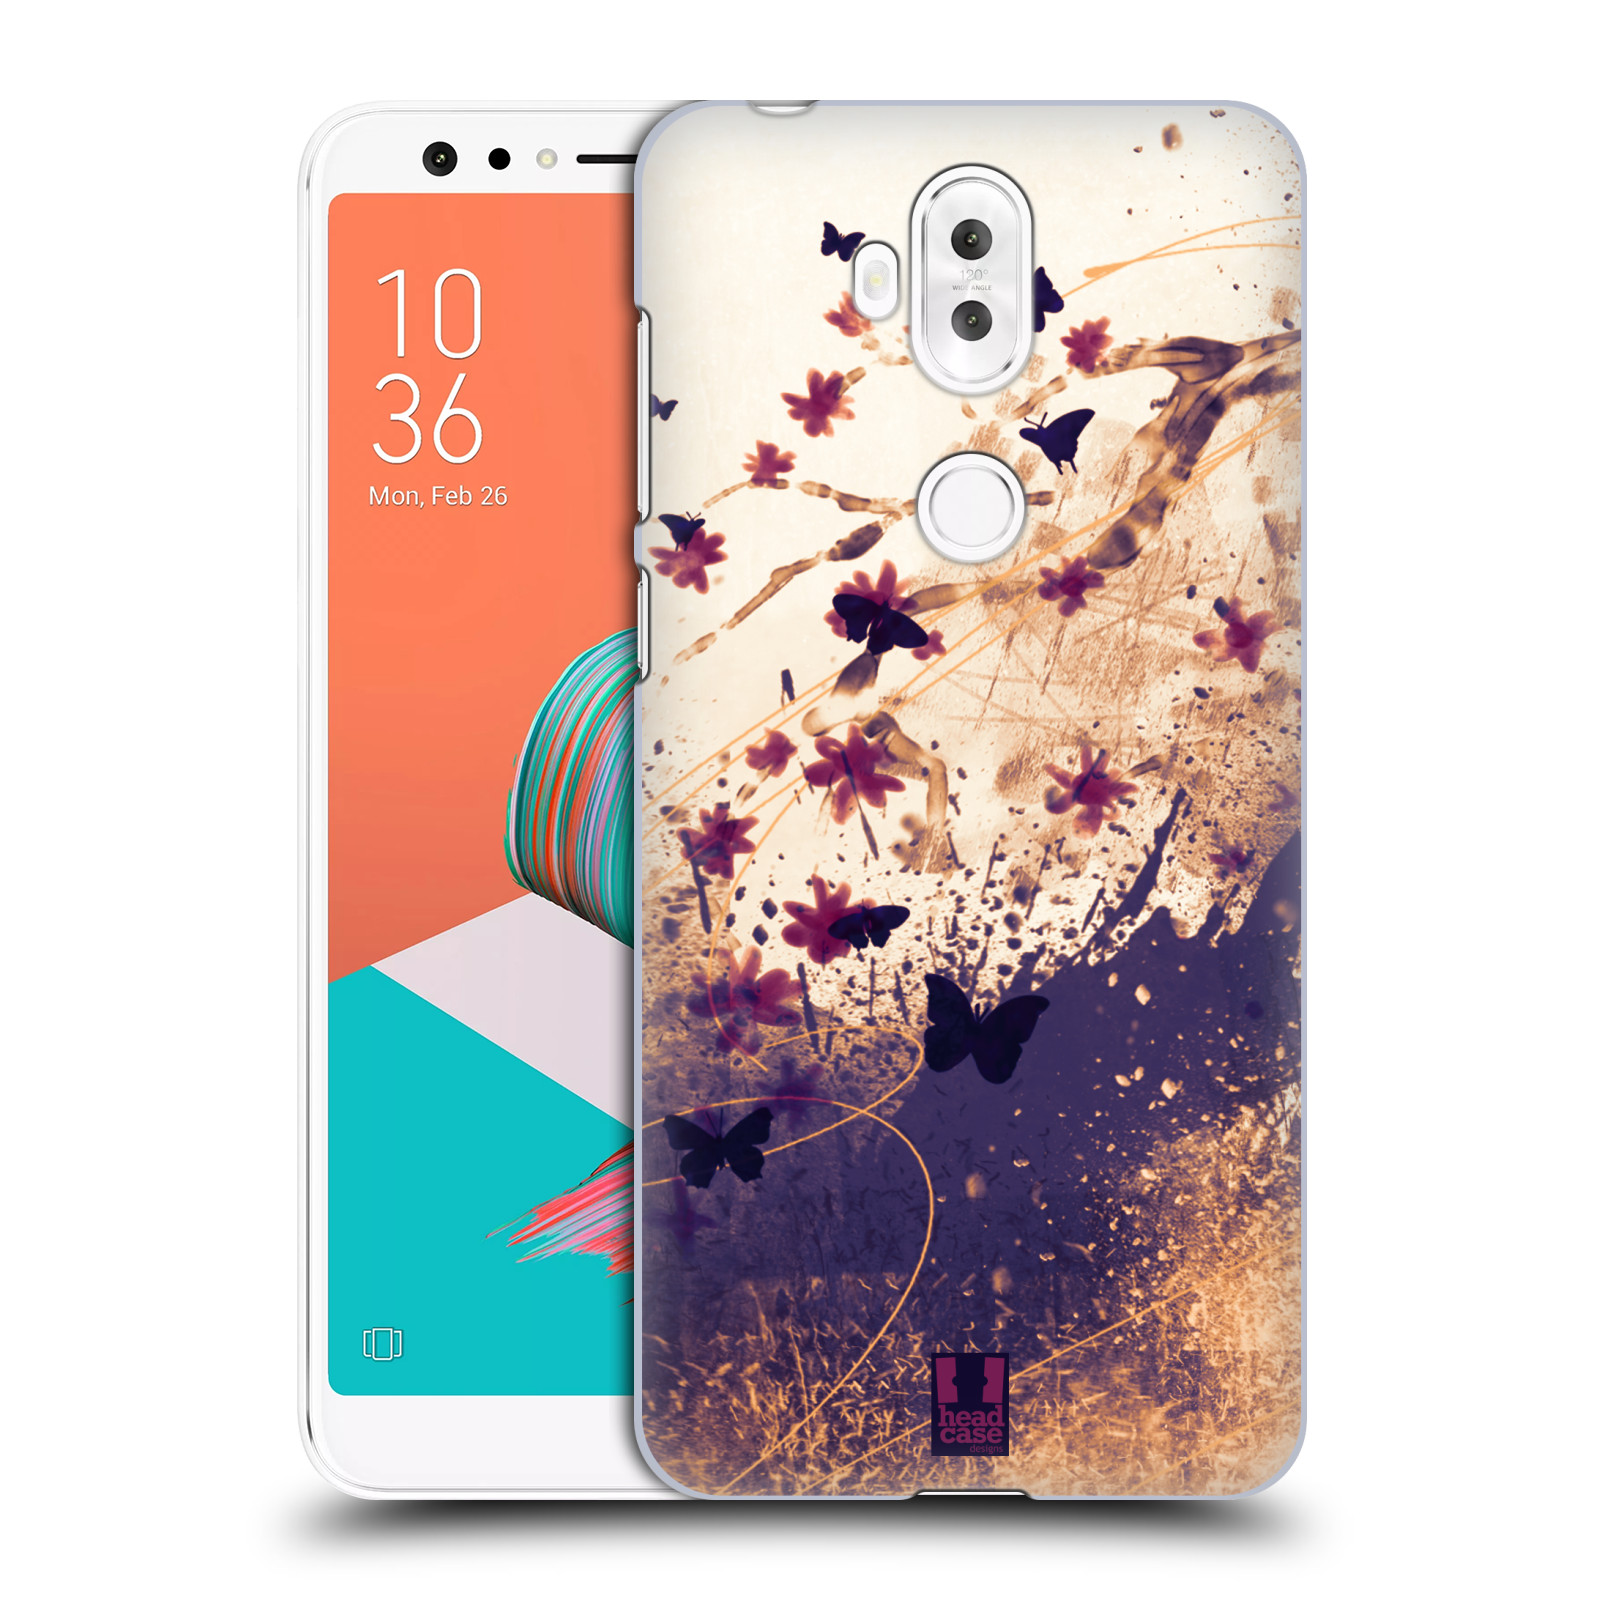 Zadní obal pro mobil Asus Zenfone 5 Lite ZC600KL - HEAD CASE - Barevné květy a motýlci